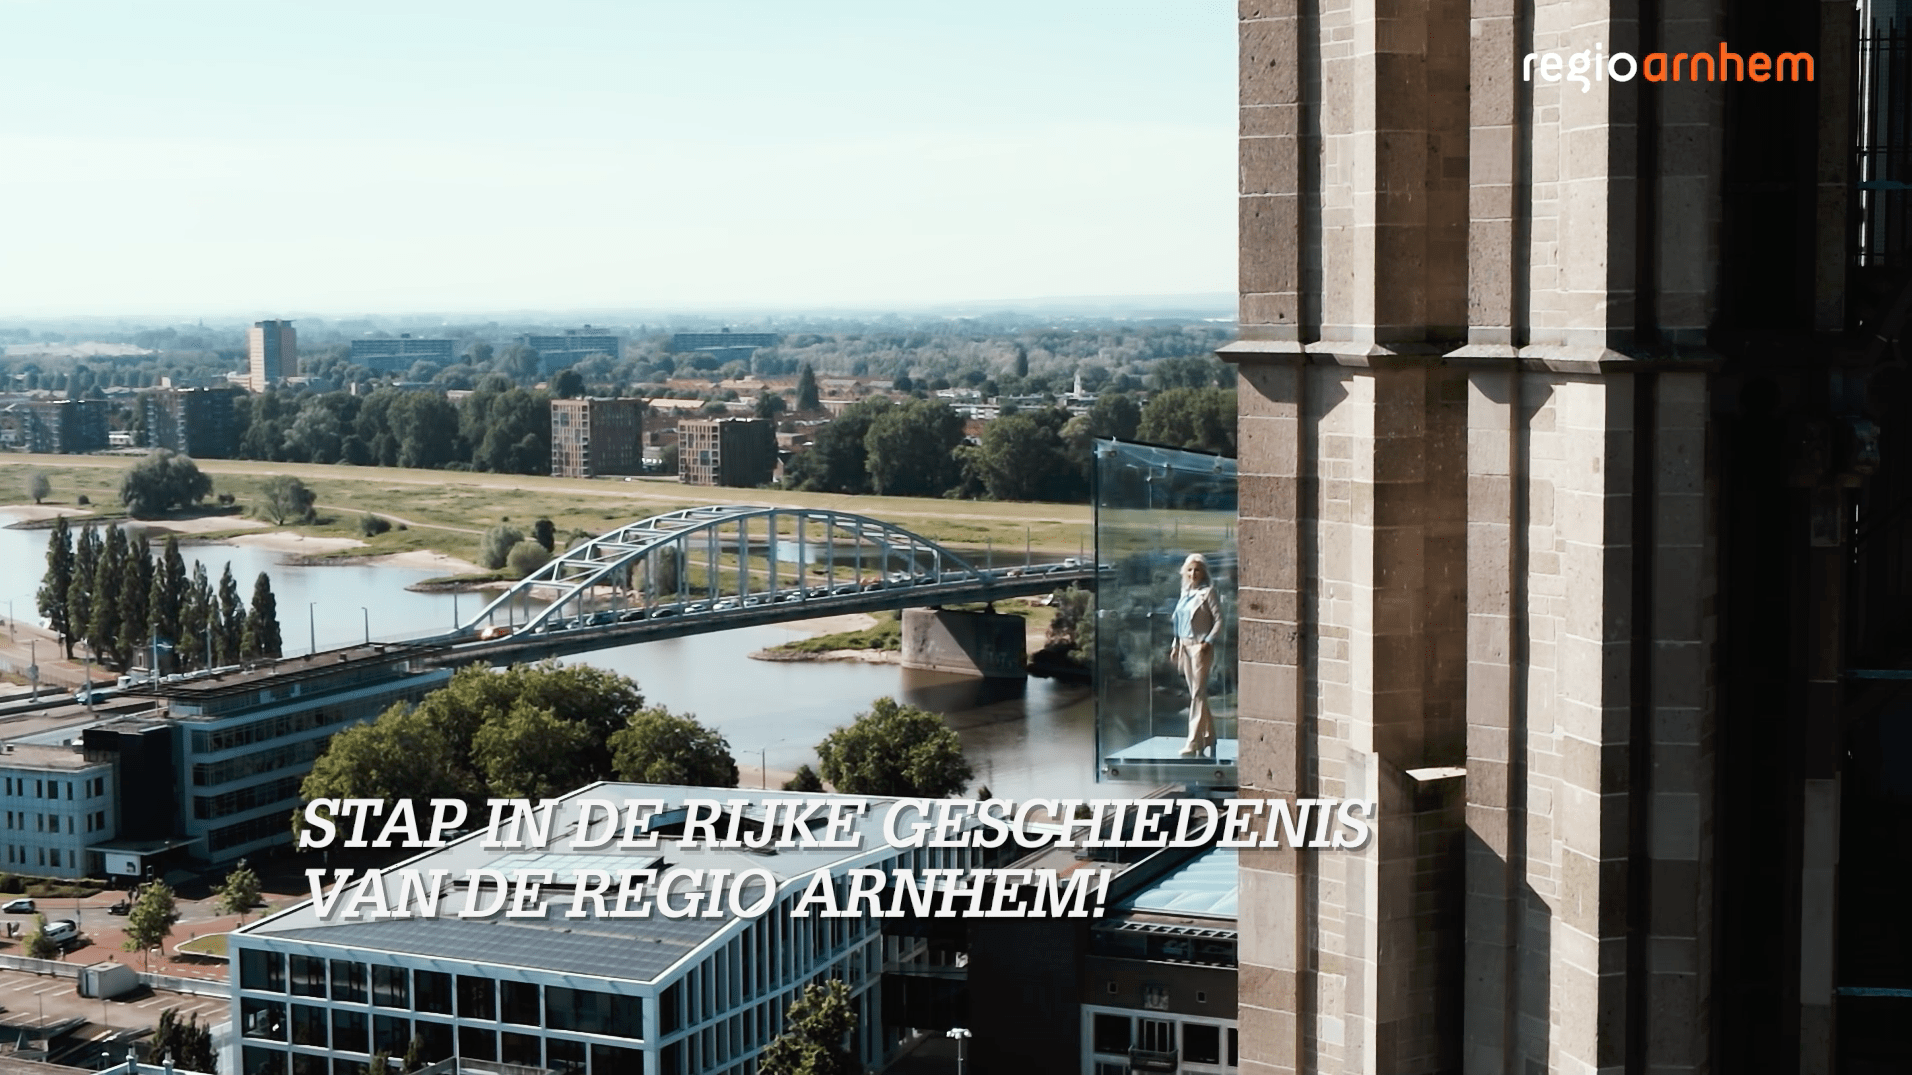 Visit Arnhem